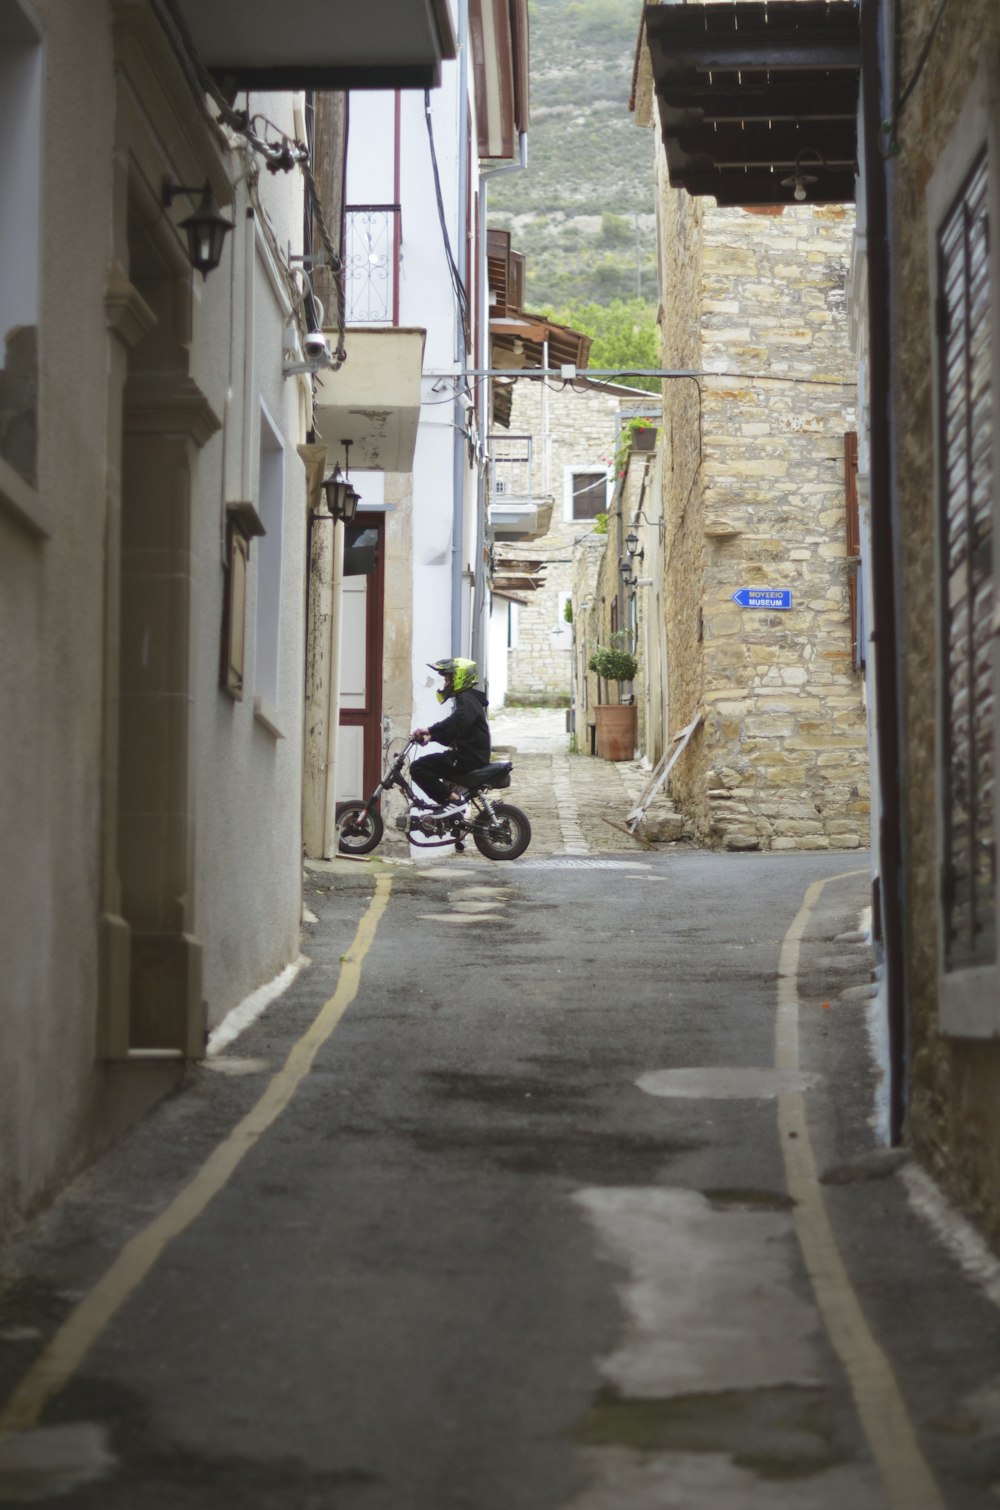 una persona conduciendo una motocicleta por una calle estrecha